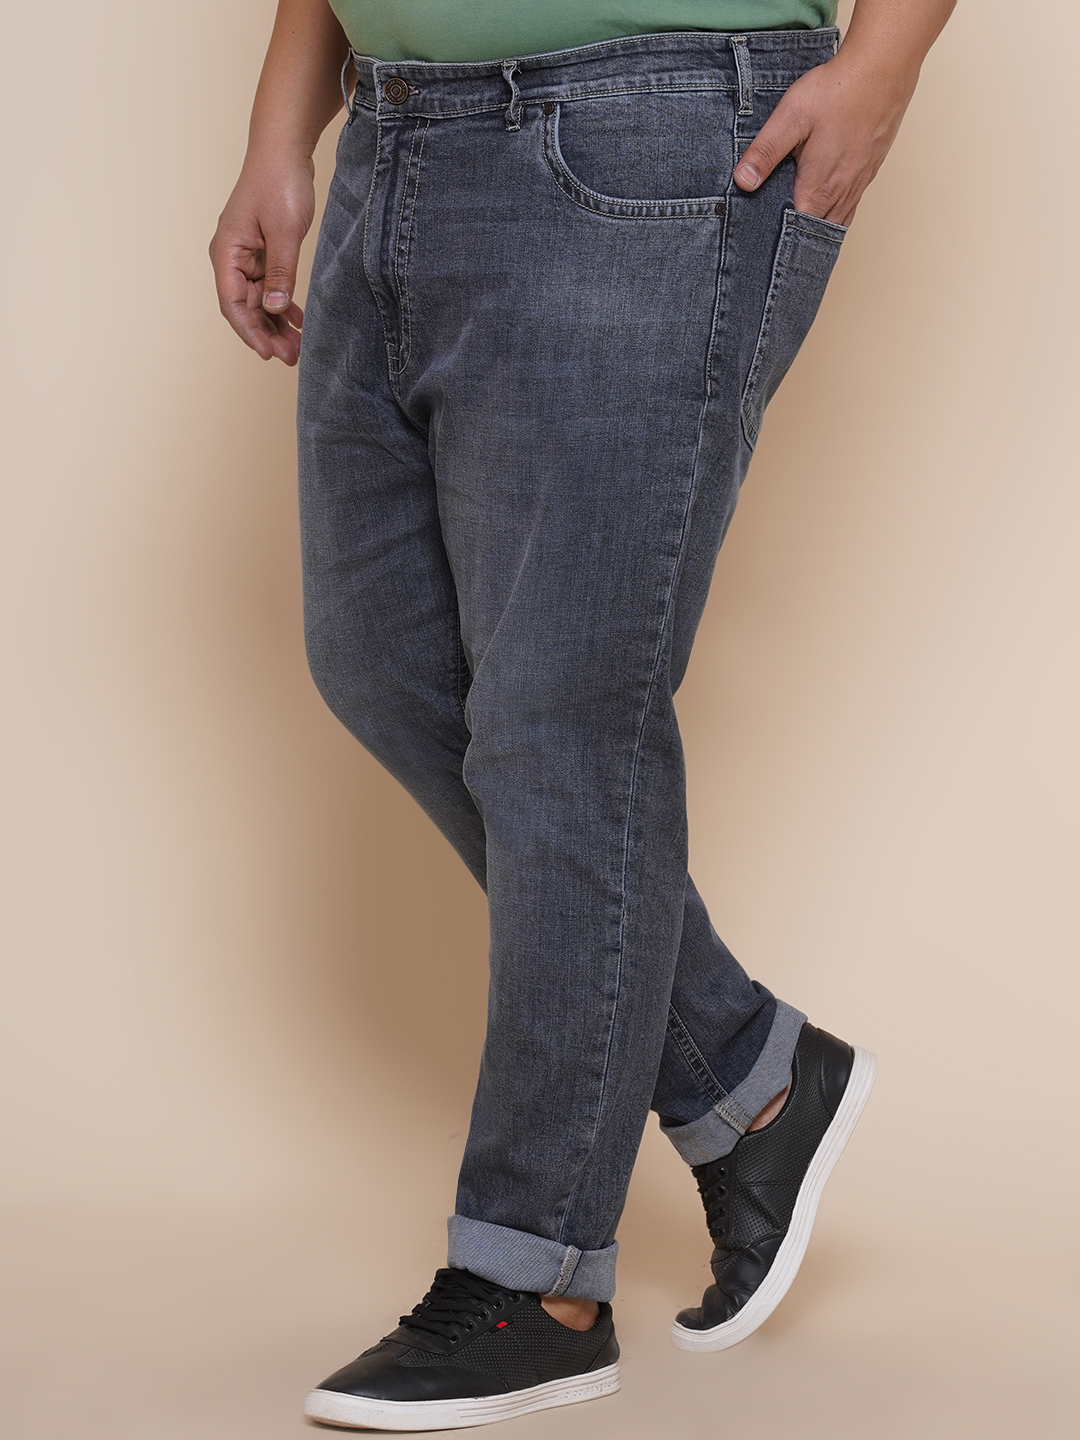 bottomwear/jeans/JPJ27003/jpj27003-4.jpg